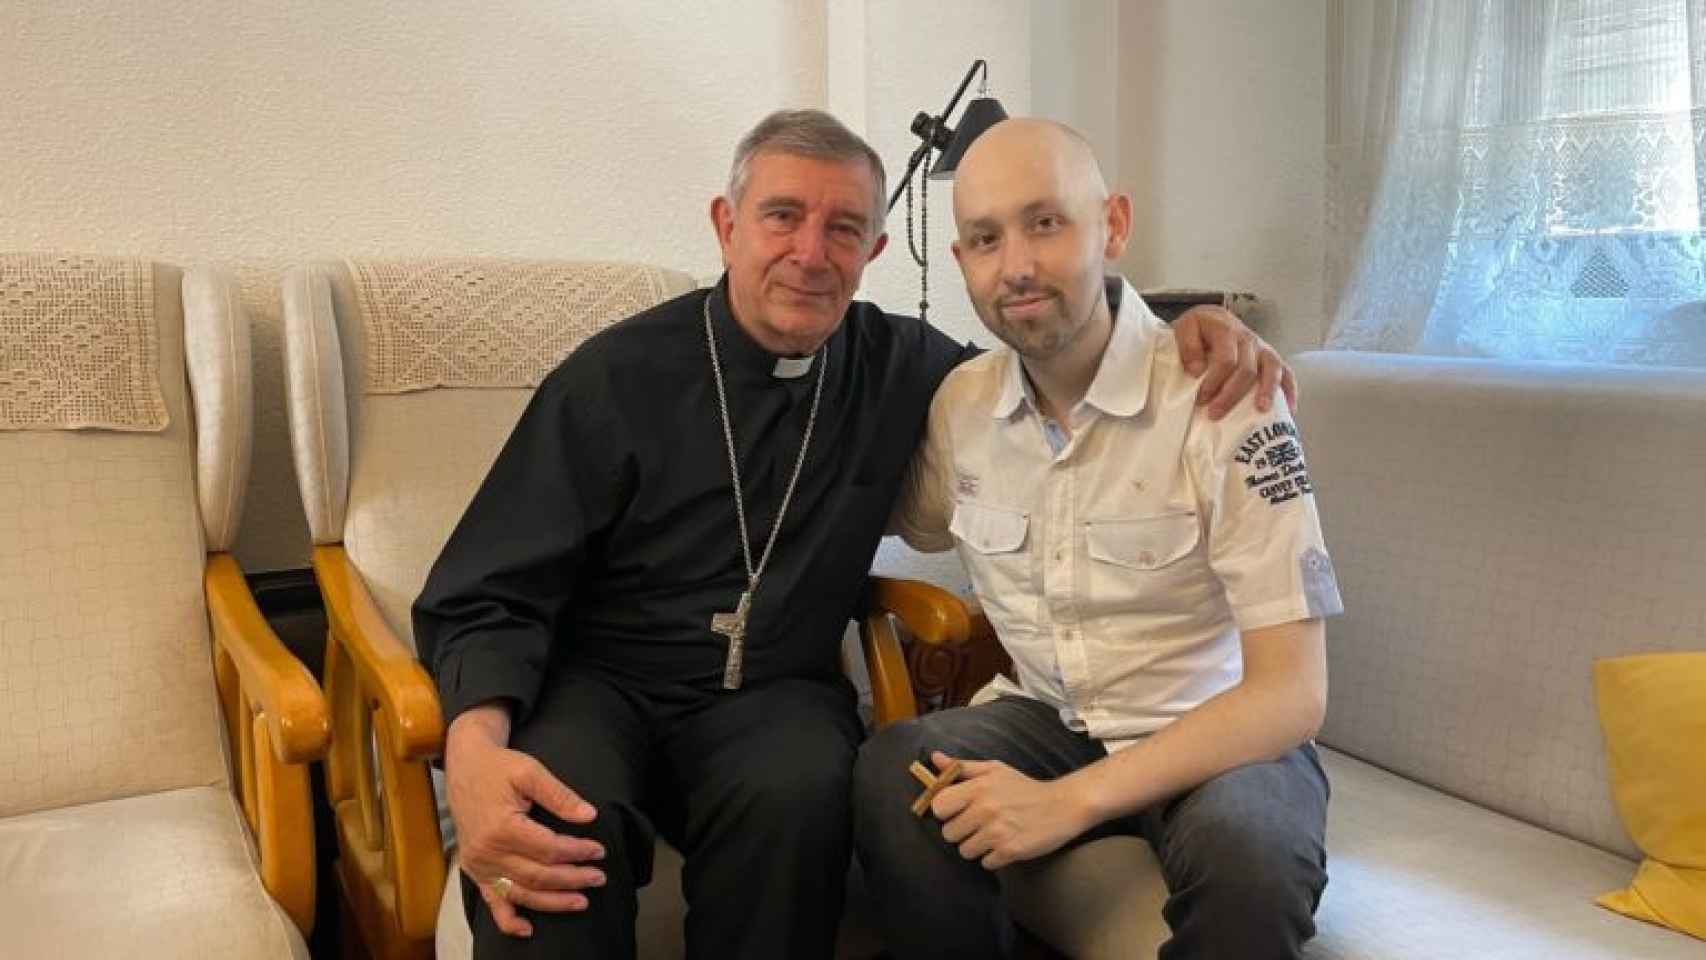 El obispo de Salamanca felicitó personalmente a Pablo por su consagración religiosa